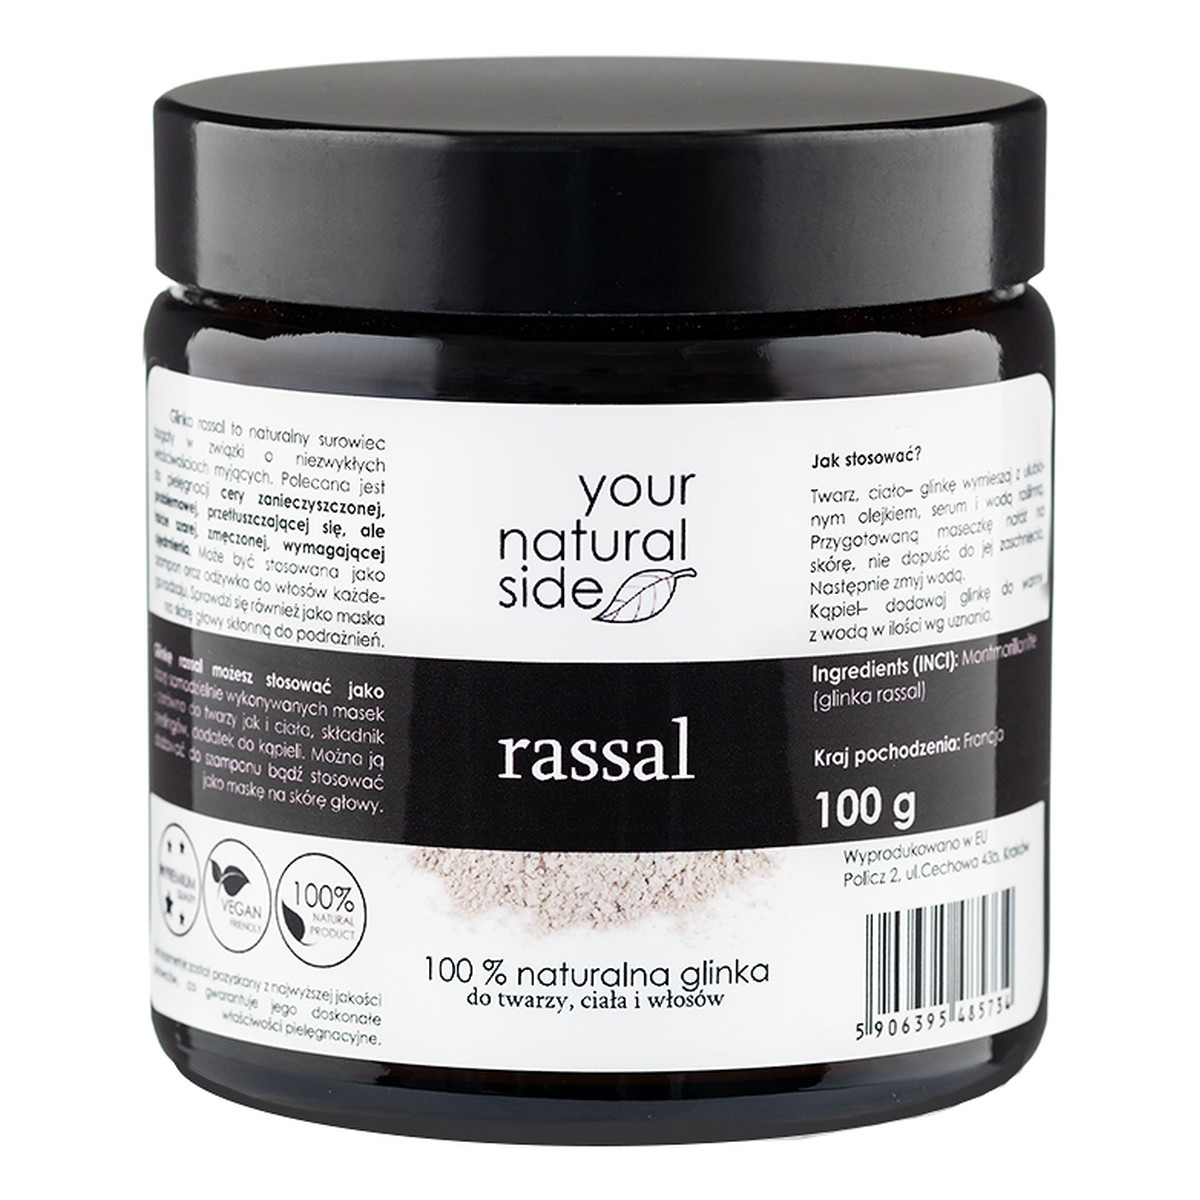 Your Natural Side Naturalna 100% Glinka rassal 100g